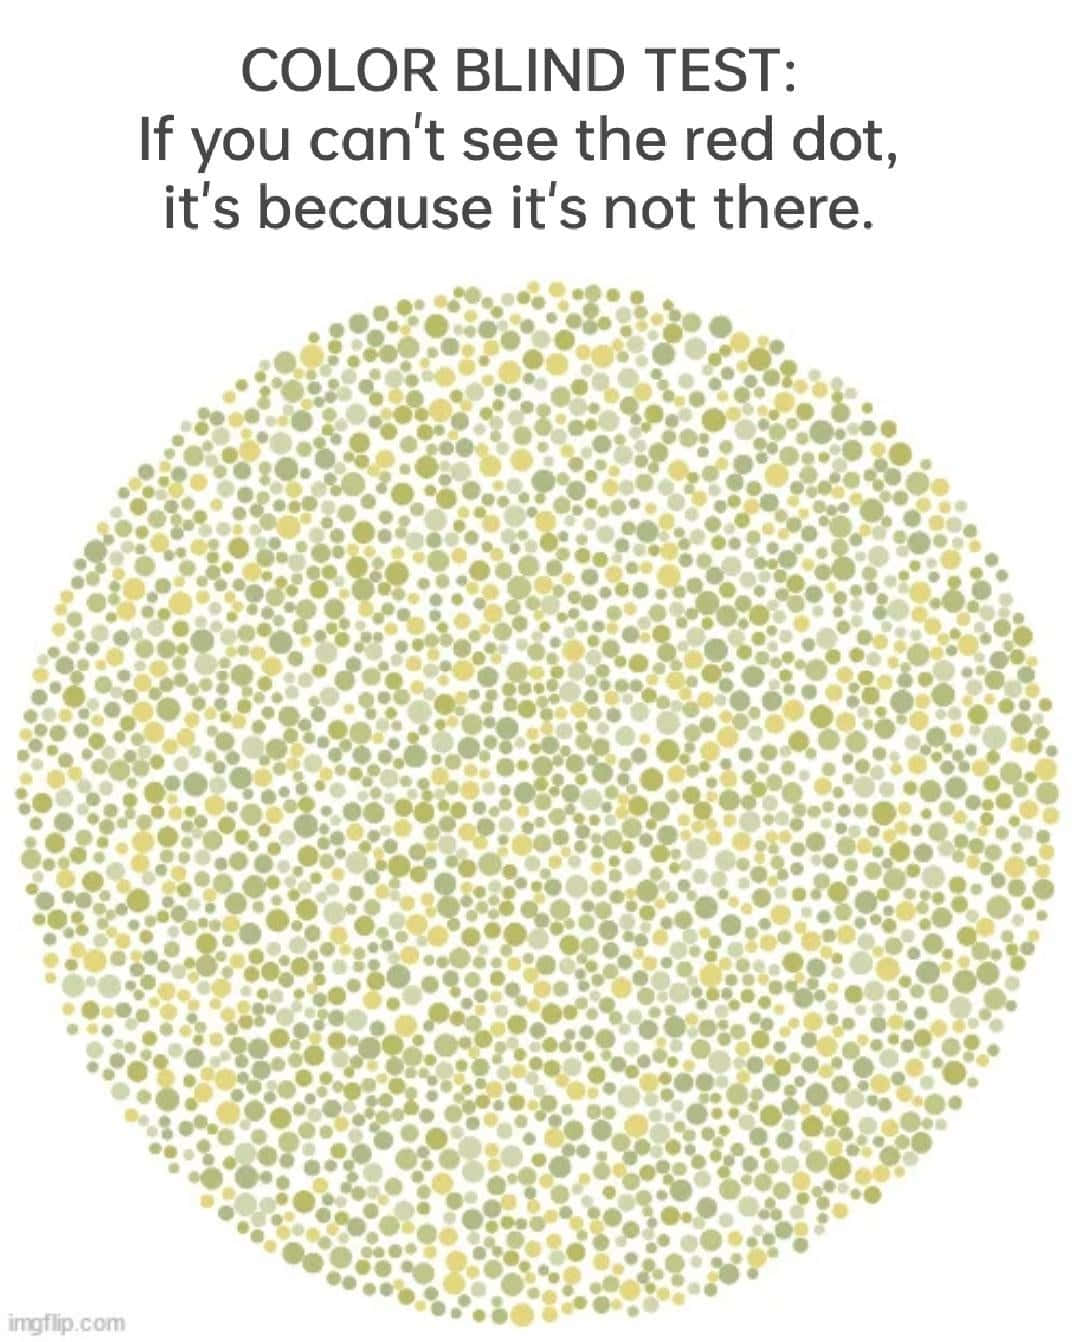 Farbenblindheitstest,wenn Du Den Roten Punkt Nicht Sehen Kannst, Weil Er Nicht Da Ist.